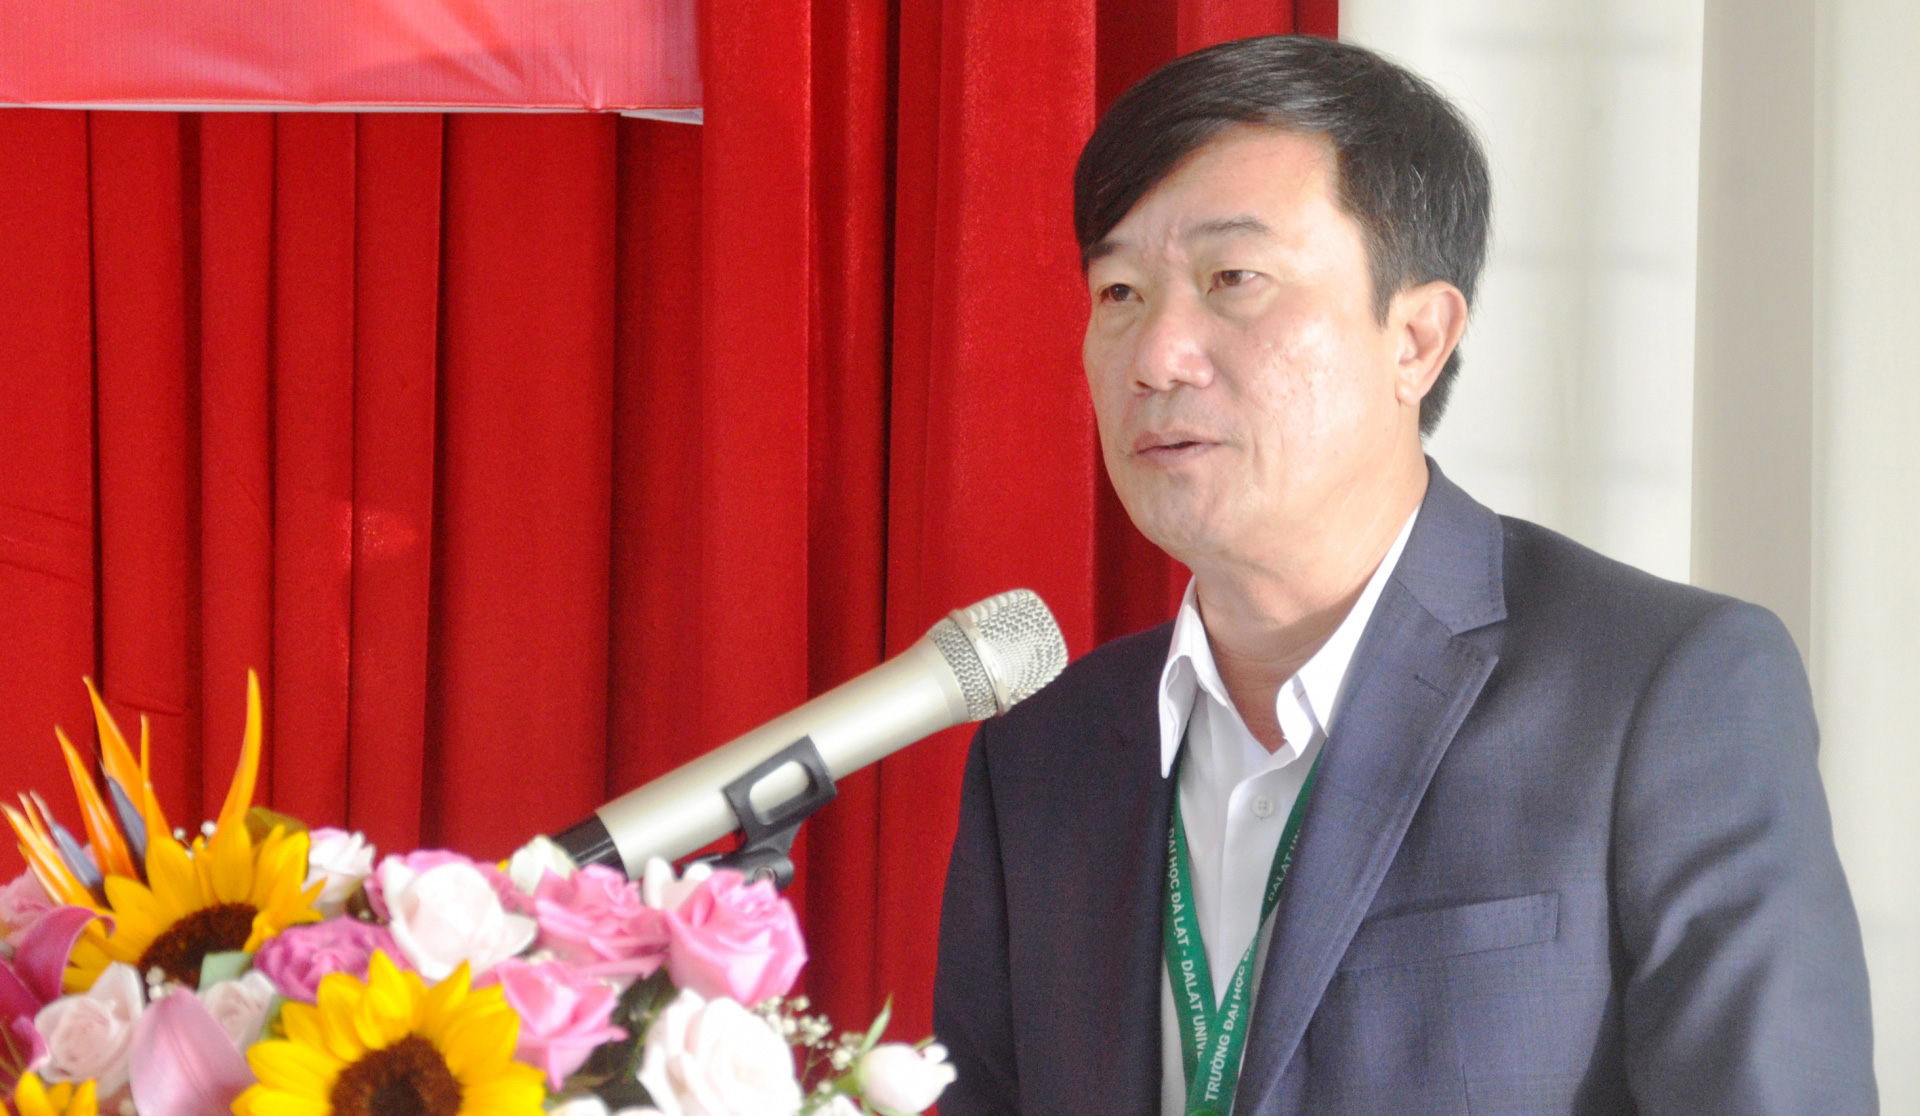 TS. Lê Minh Chiến - Hiệu trưởng Trường Đại học Đà Lạt đề xuất ý kiến để Bộ GD&ĐT sớm có những giải pháp để xây dựng khung chuẩn cho lộ trình phát triển